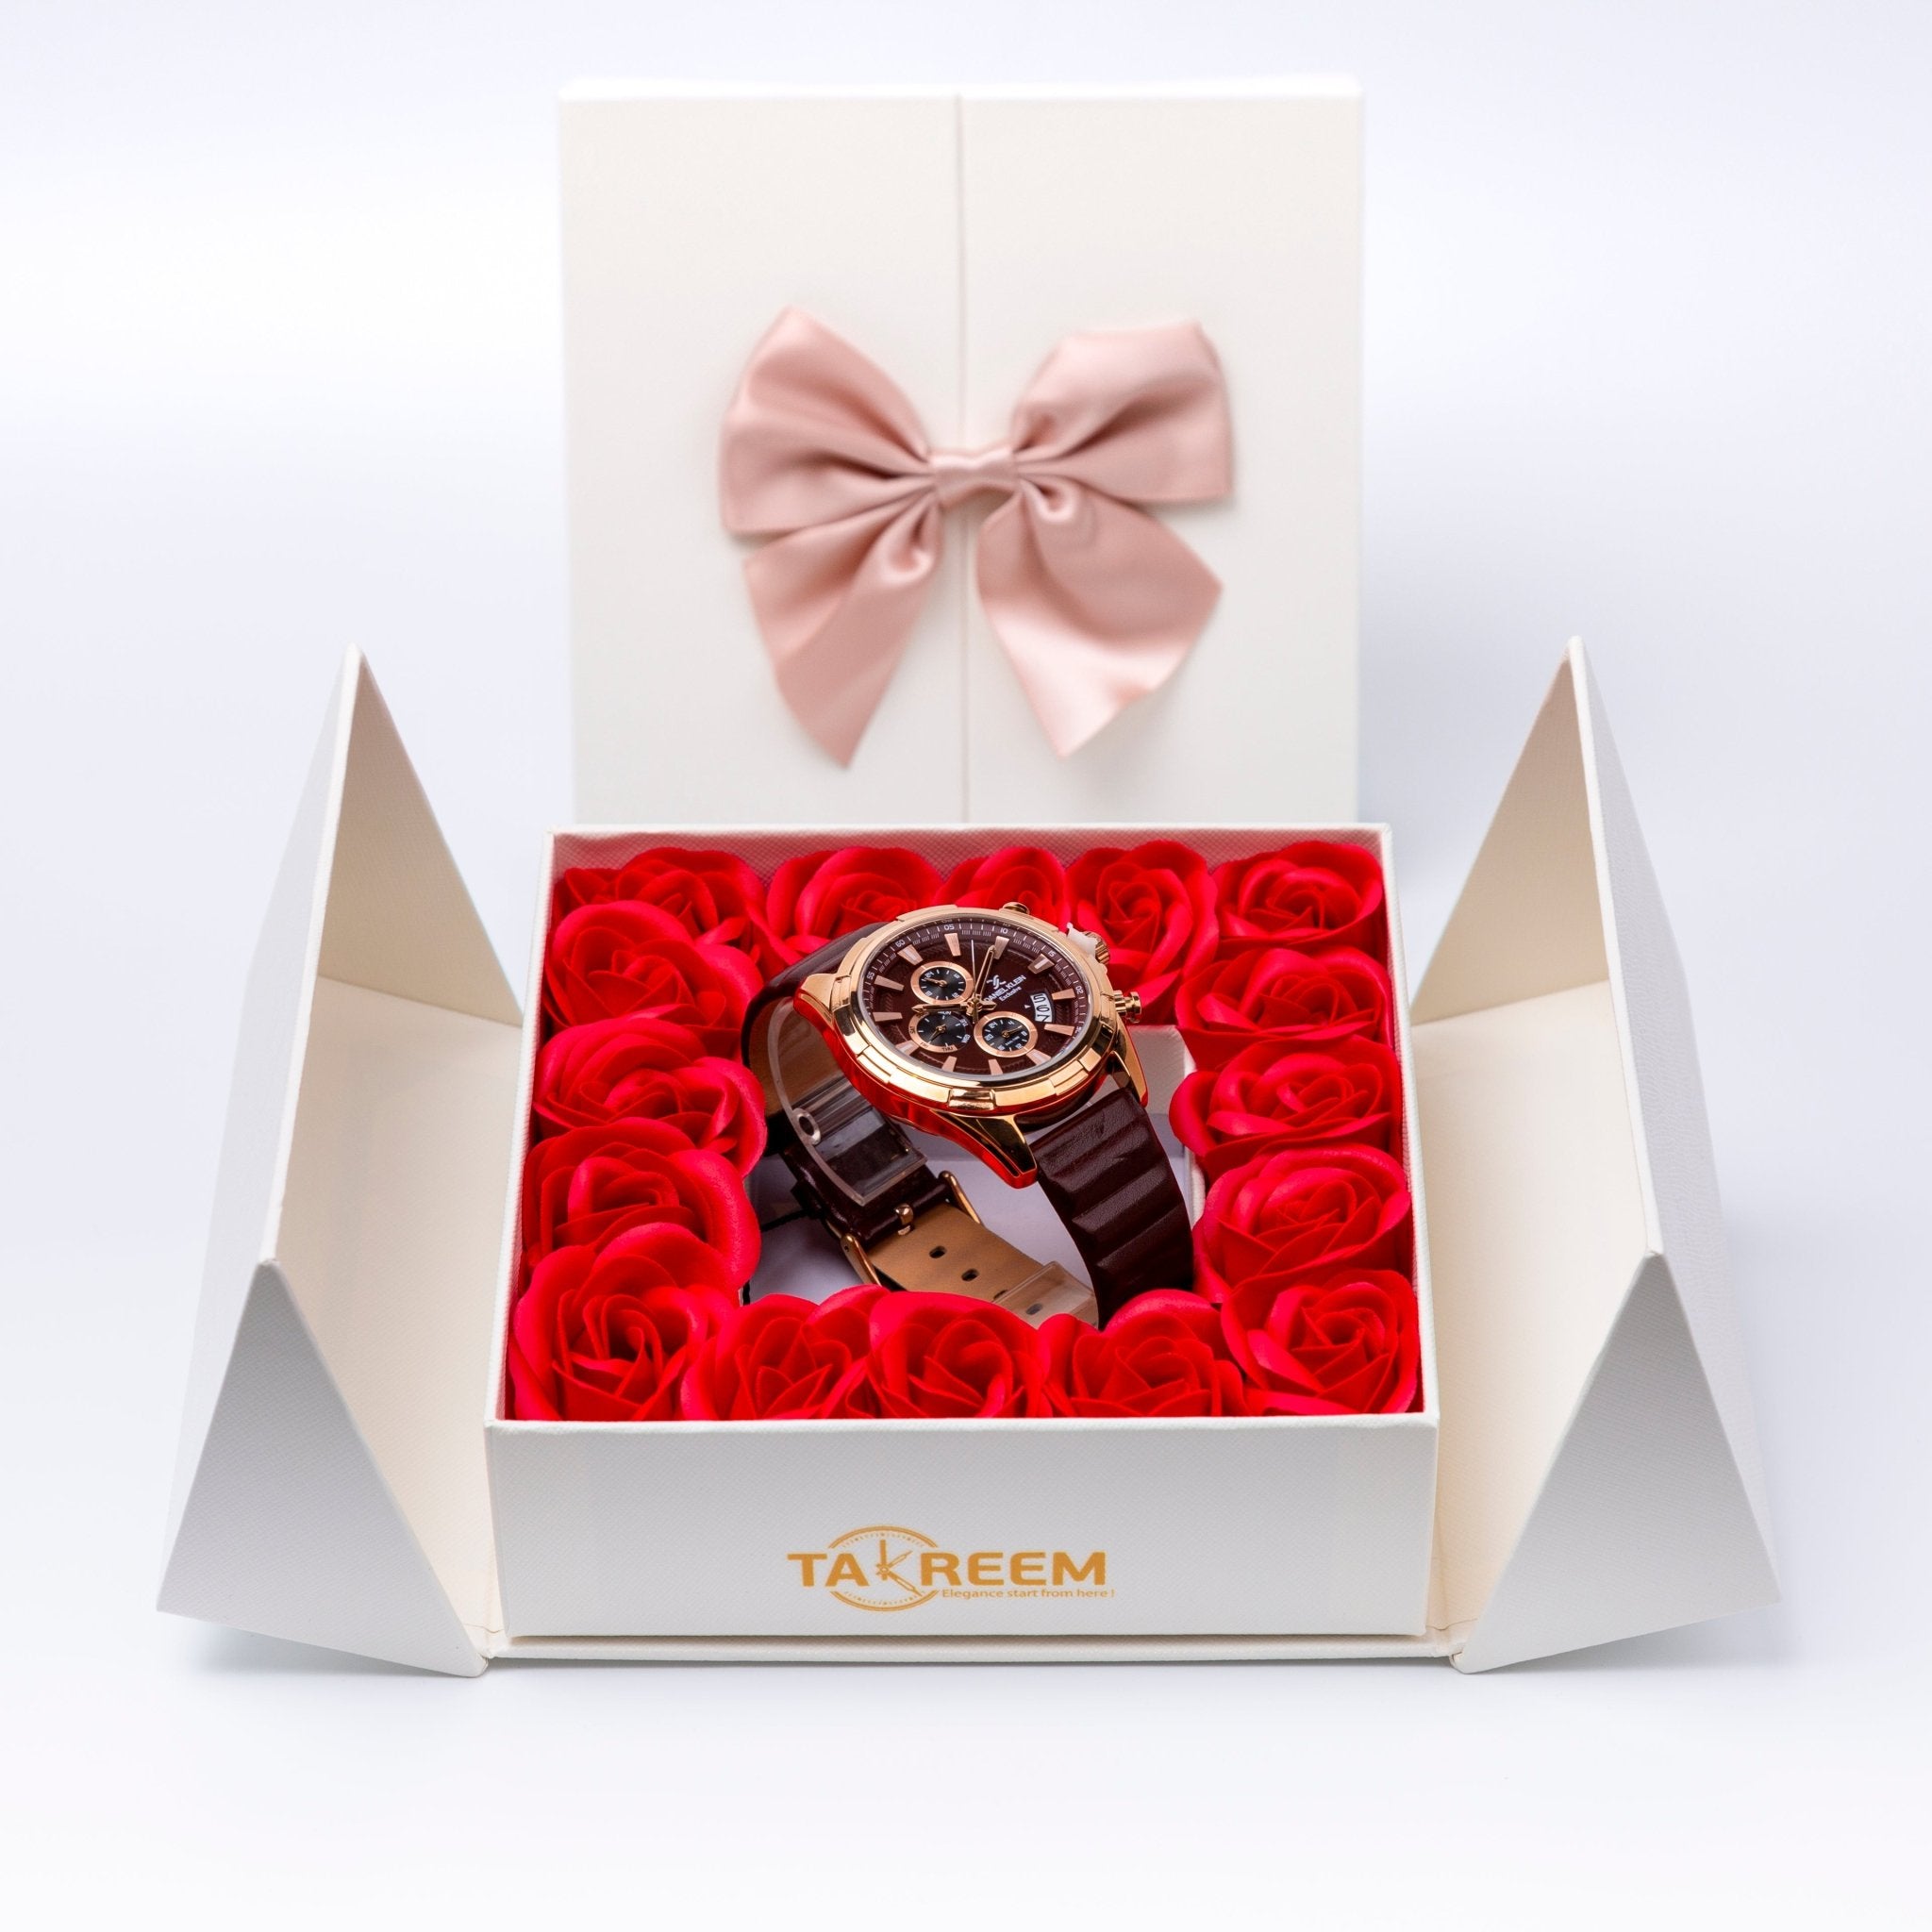 Flower Box - Gift For Men 2 - #shoFlower Box - Gift For Men 2p_name#Flower Box - Gift For Men 2Gift Boxes & TinsTakreemTakreem.joMenWatchFlower Box - Gift For Men 2 - Takreem.jo